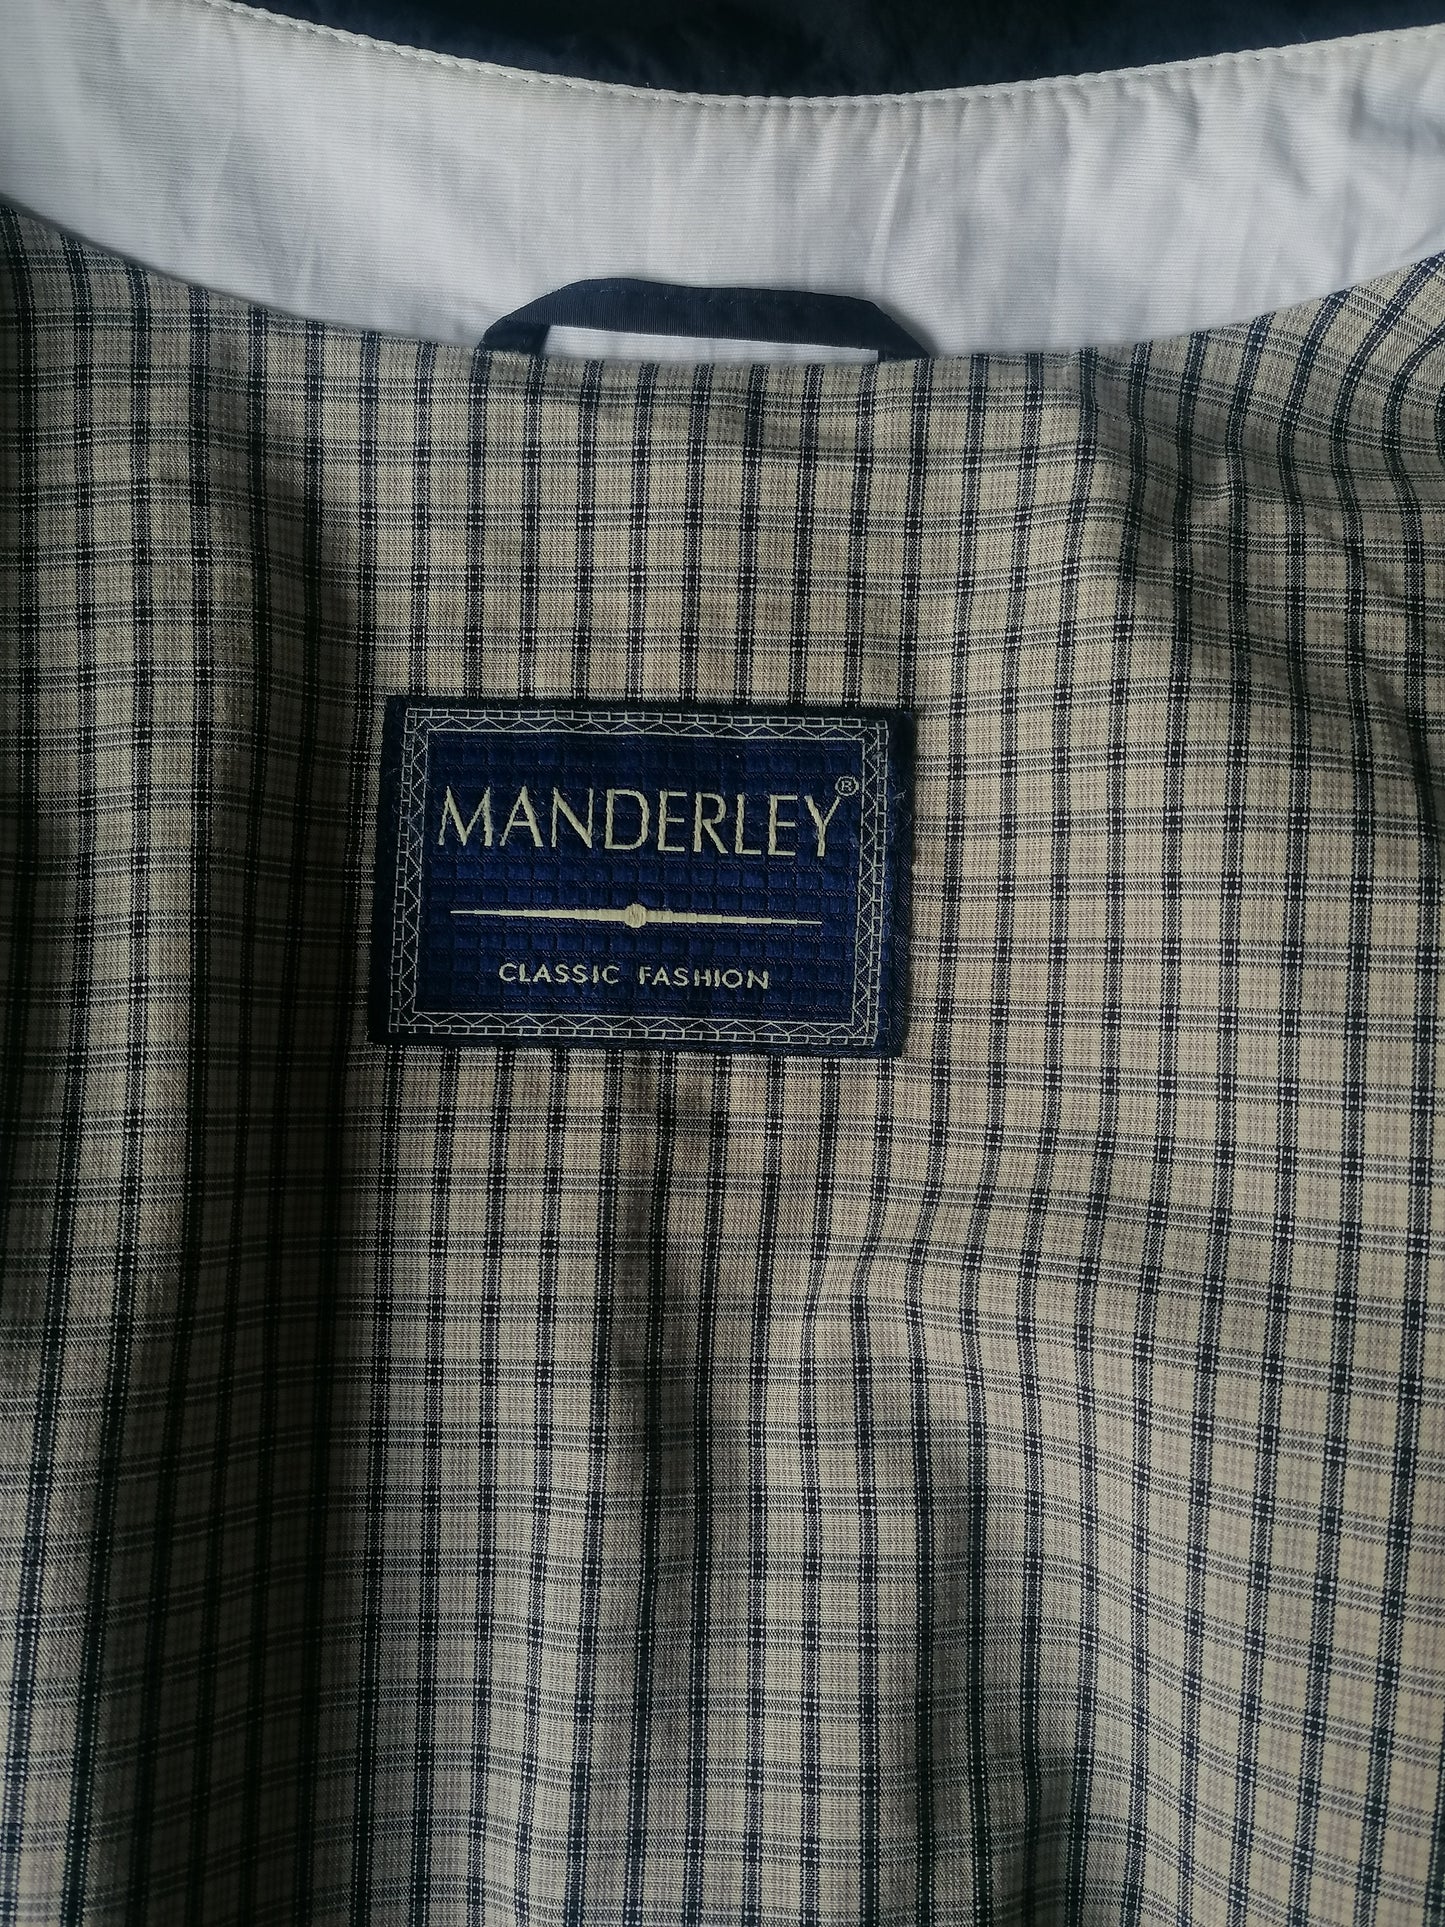 Veste Manderley Mantel / demi-longueur. Couleur bleu foncé. Taille 98 / XL. (58/60)